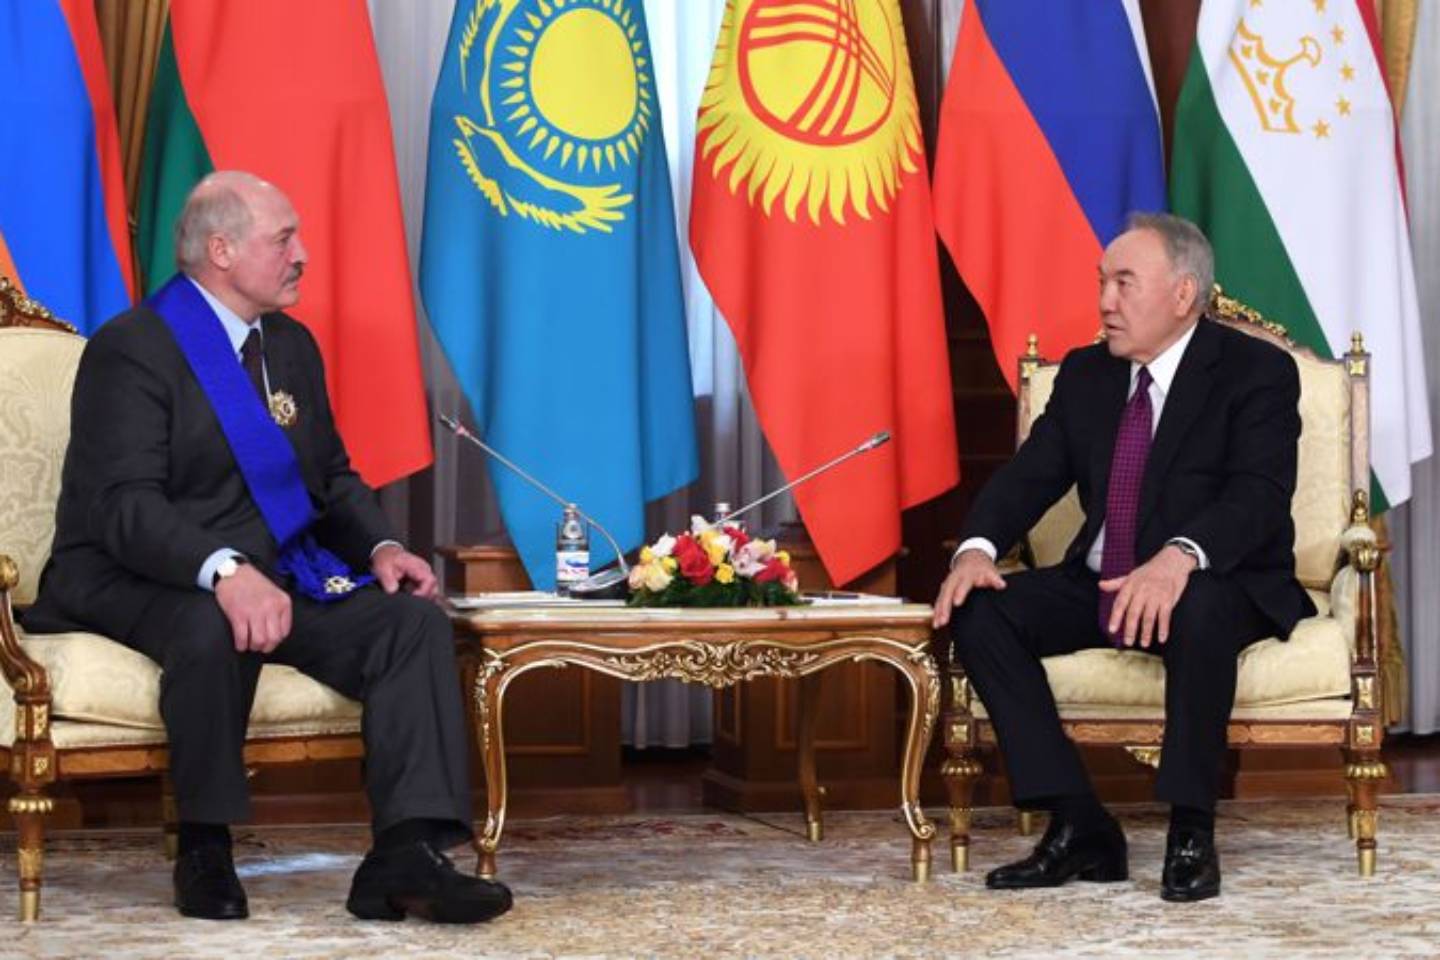 Новости мира / Политика в мире / О чем разговаривали президент Беларуси и Елбасы